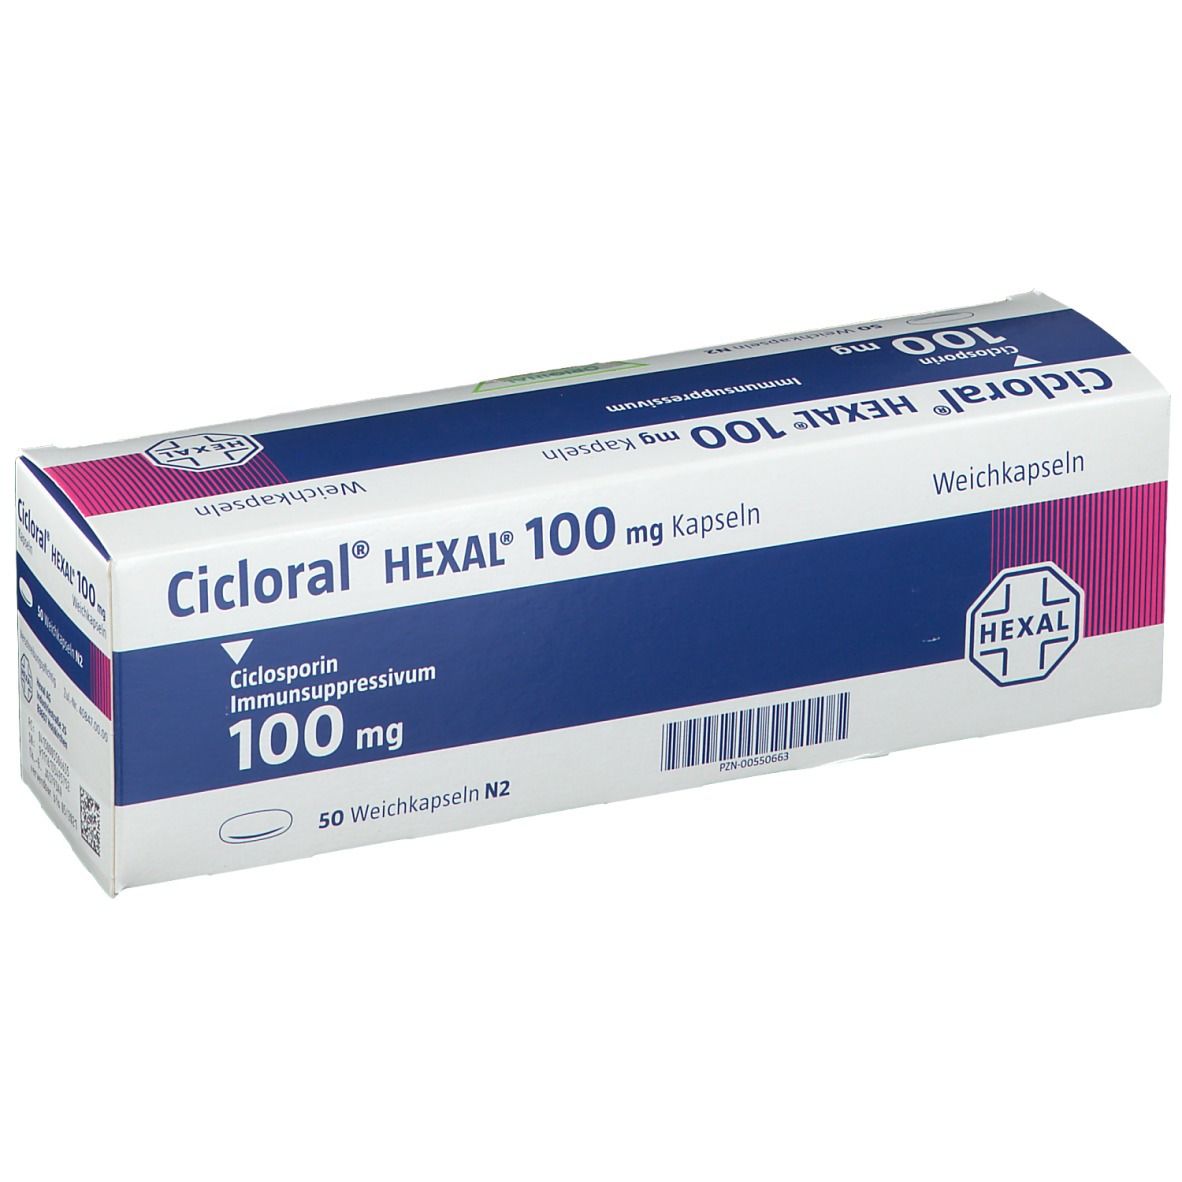 Cicloral® HEXAL® 100 mg